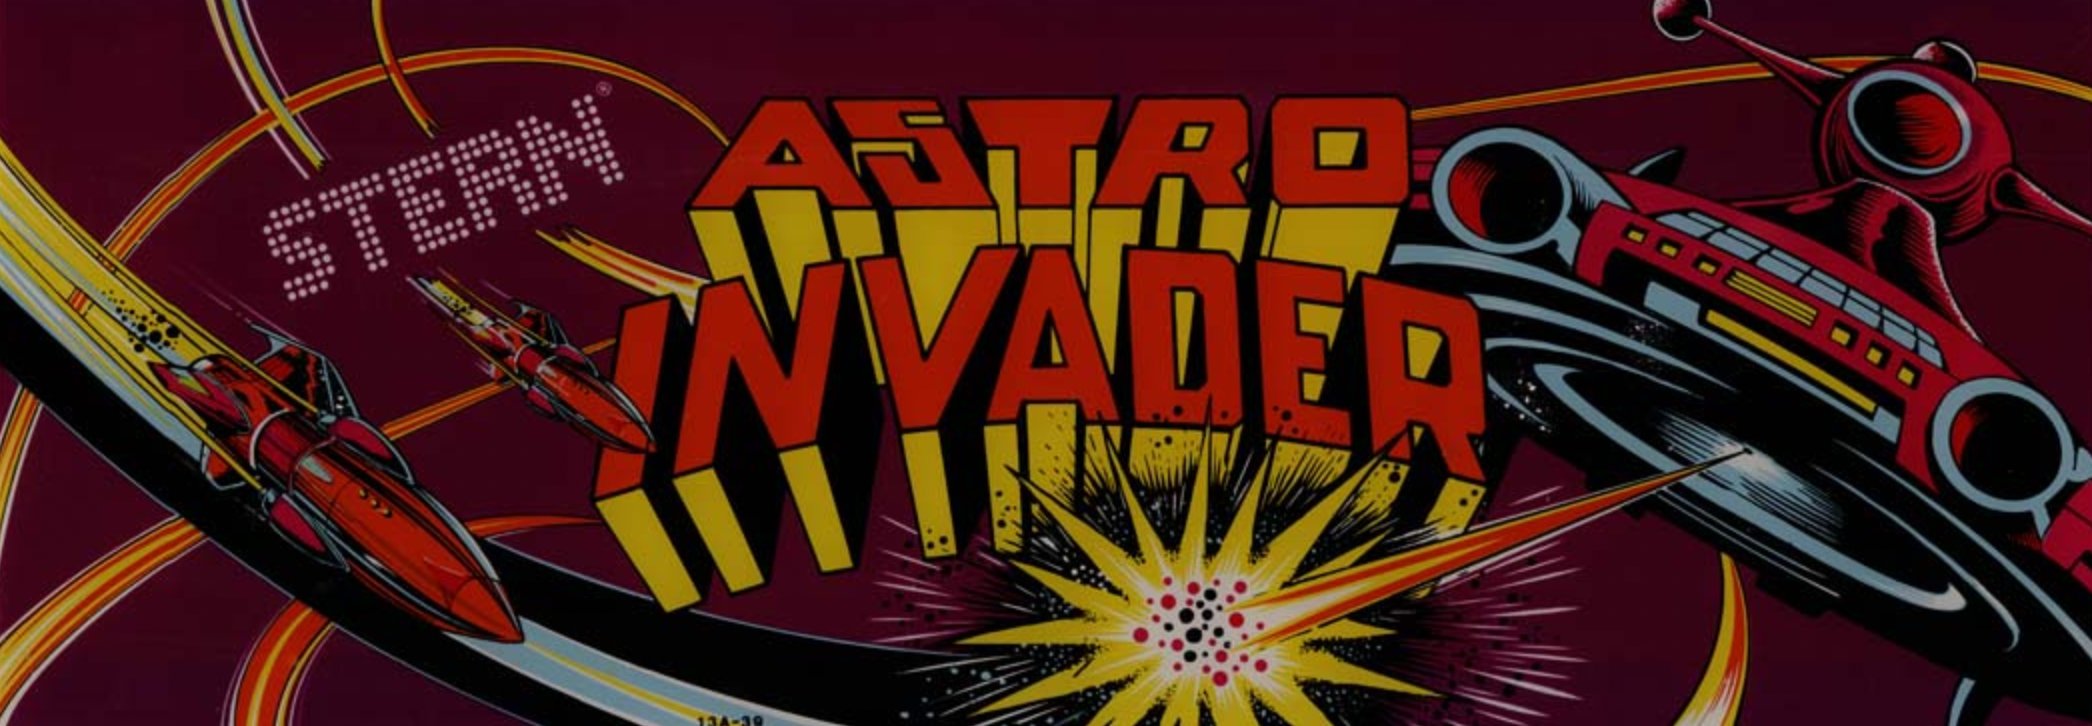 Astro Invader (Marquee) (Museum RetroGames e. V. CC BY-NC-SA)